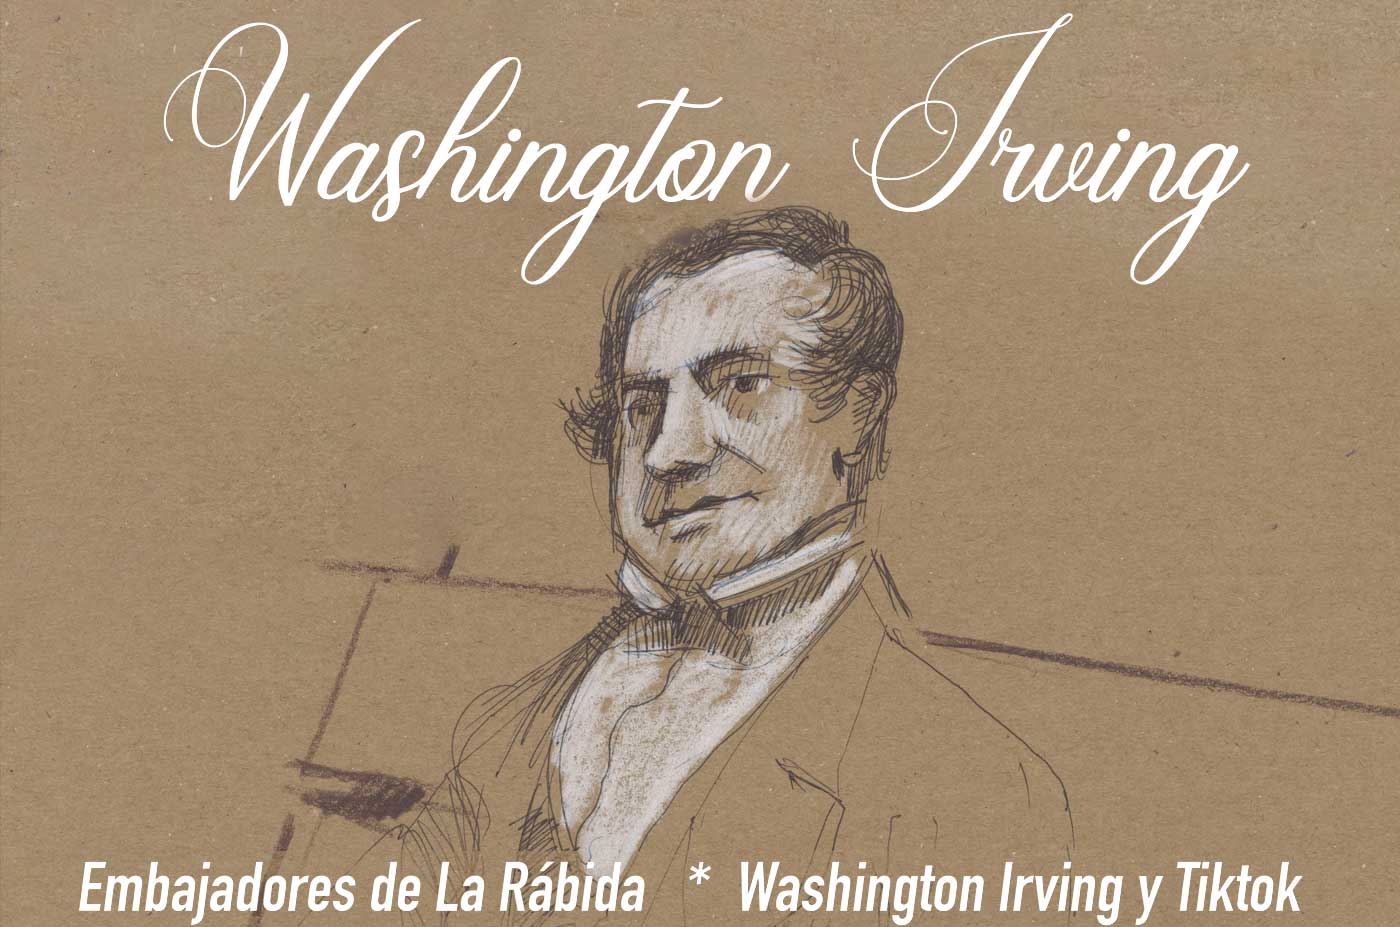 Washington Irving embajadores de la rabida sabados noviembre